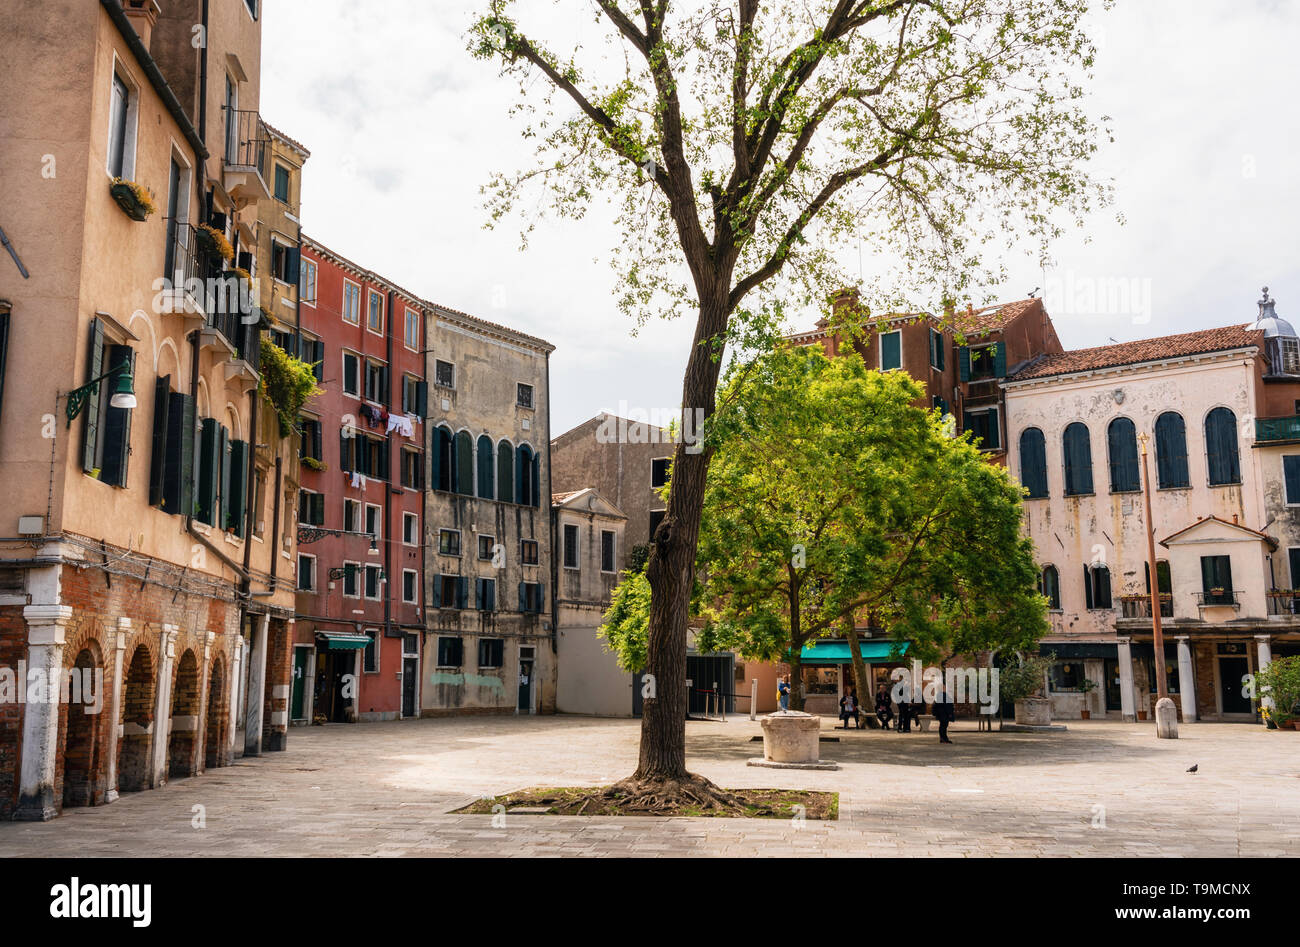 Main square The Venetian Ghetto or Campo del Ghetto Nuovo, Venice, Italy Stock Photo